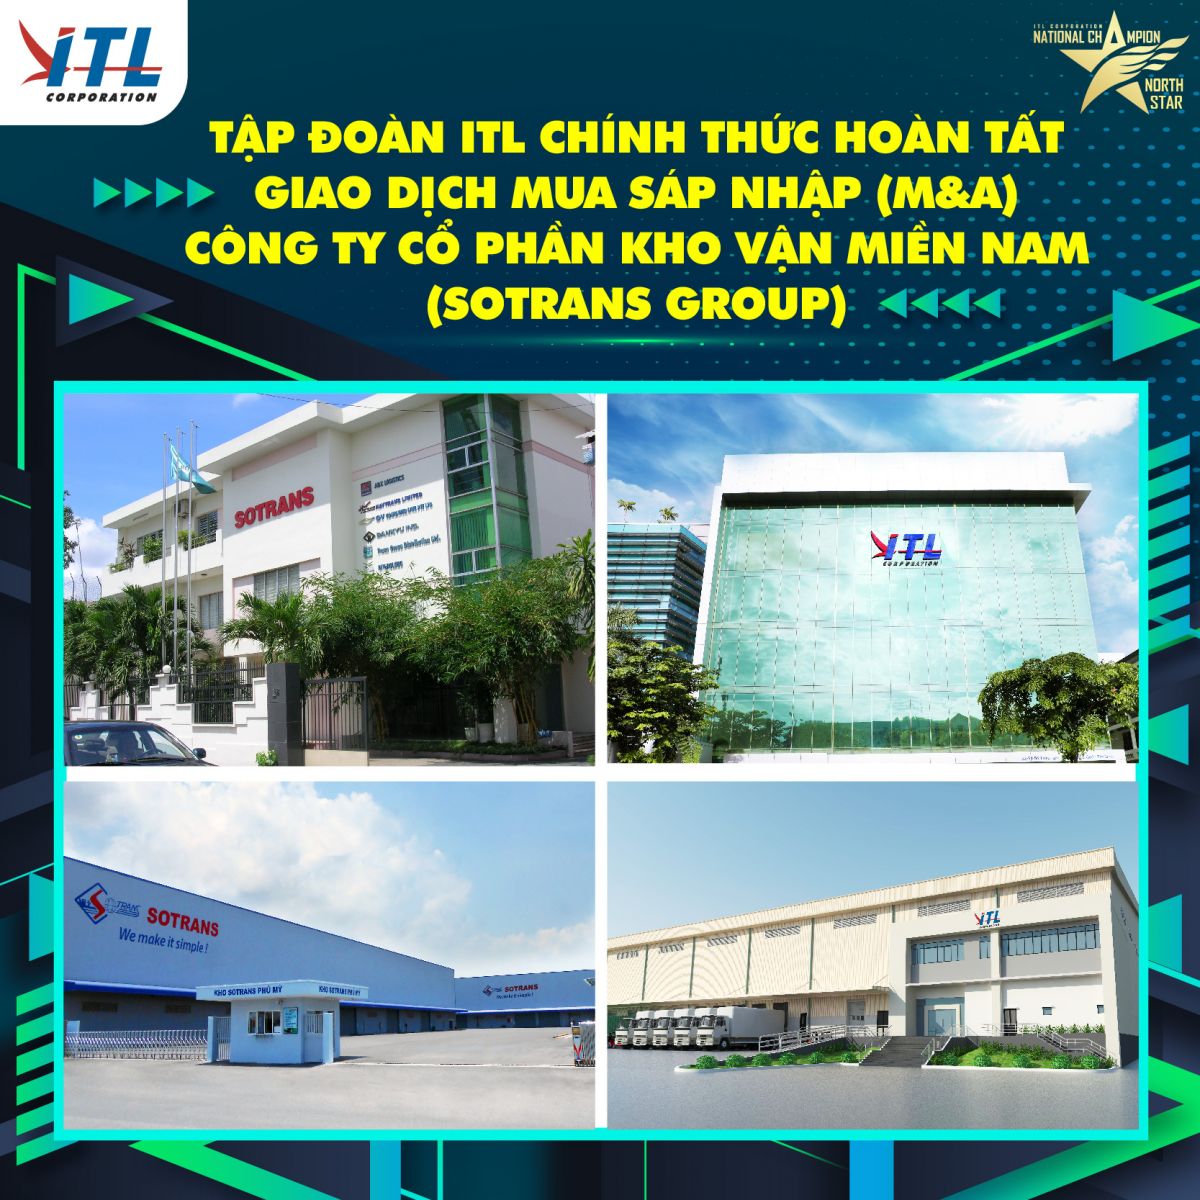 ITL Corp thông báo hoàn tất giao dịch vào ngày 18/8